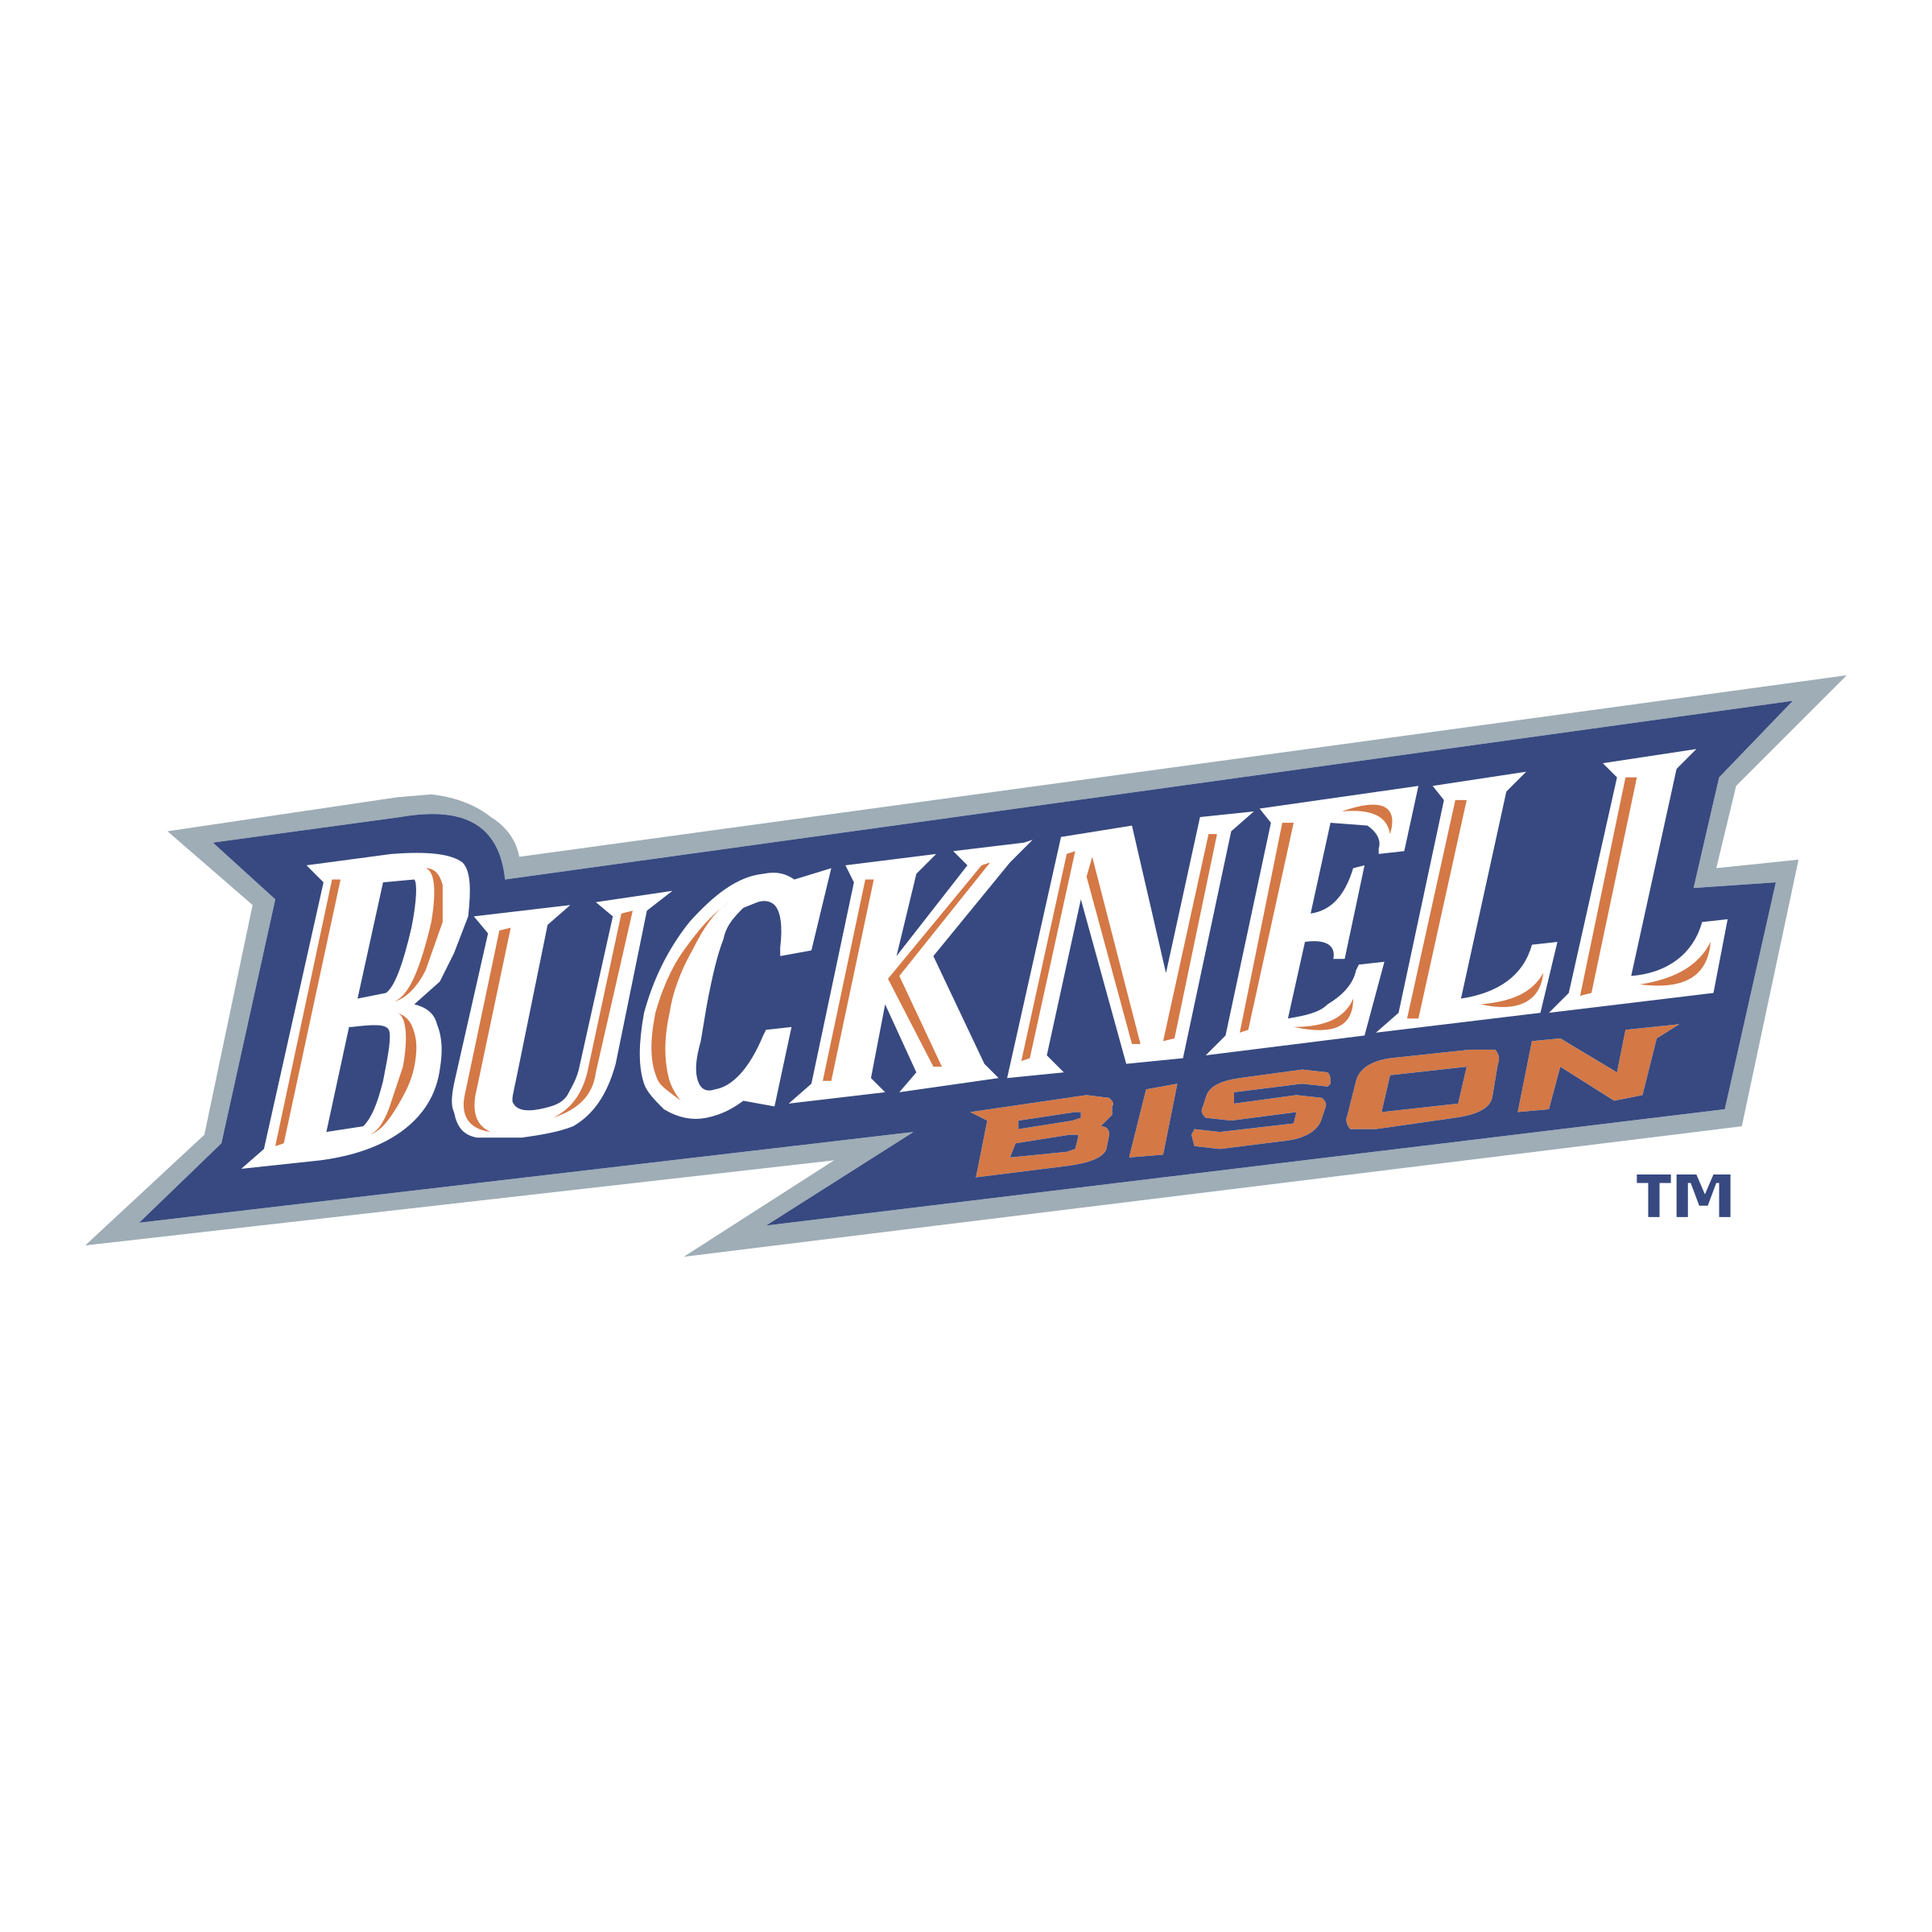 Bucknell Bison Logo - Bucknell Bison Logo PNG Transparent & SVG Vector - Freebie Supply